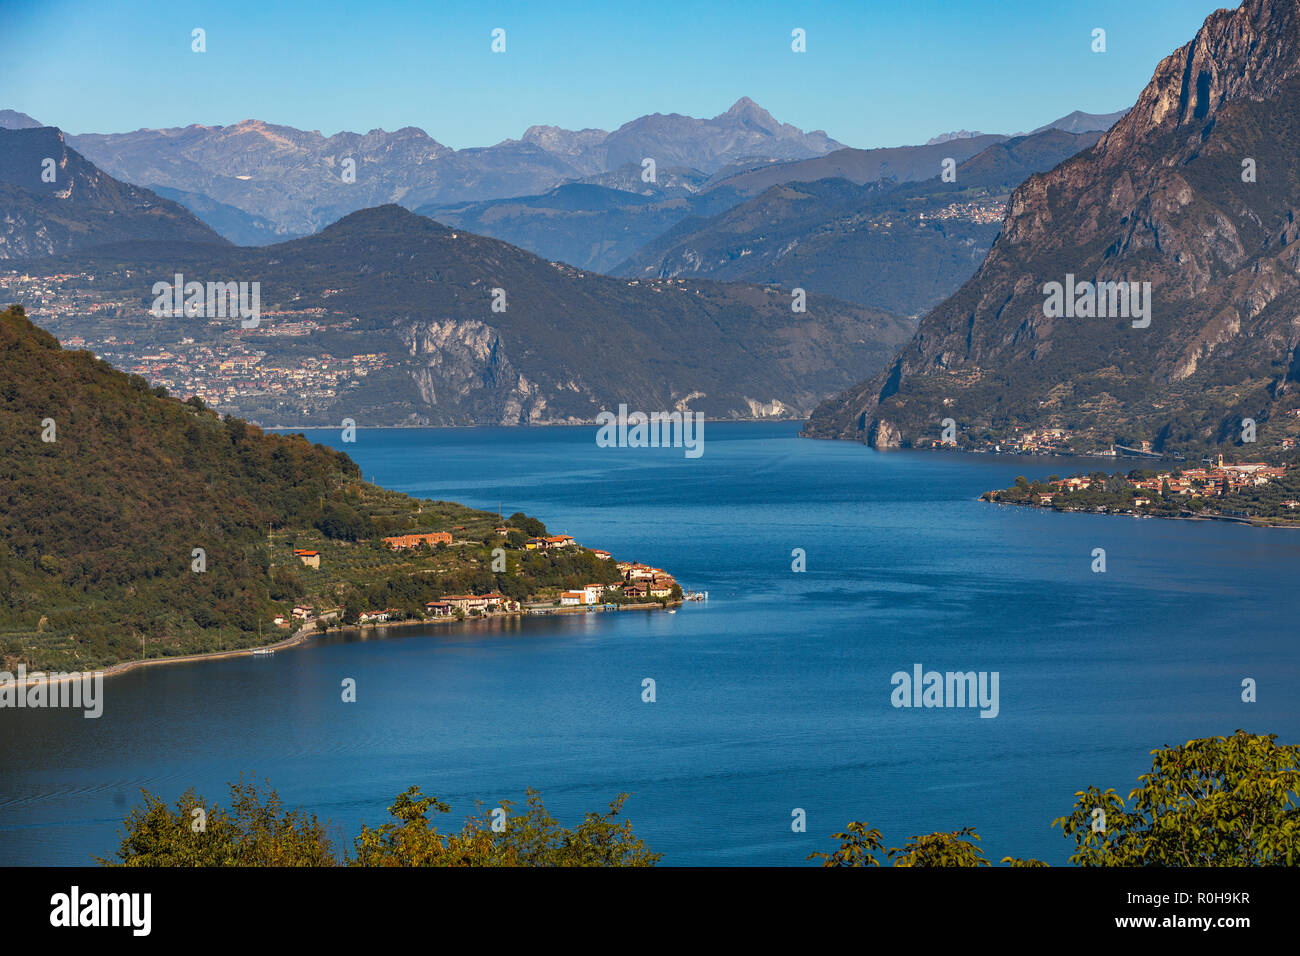 El lago de Iseo, Italia Foto de stock